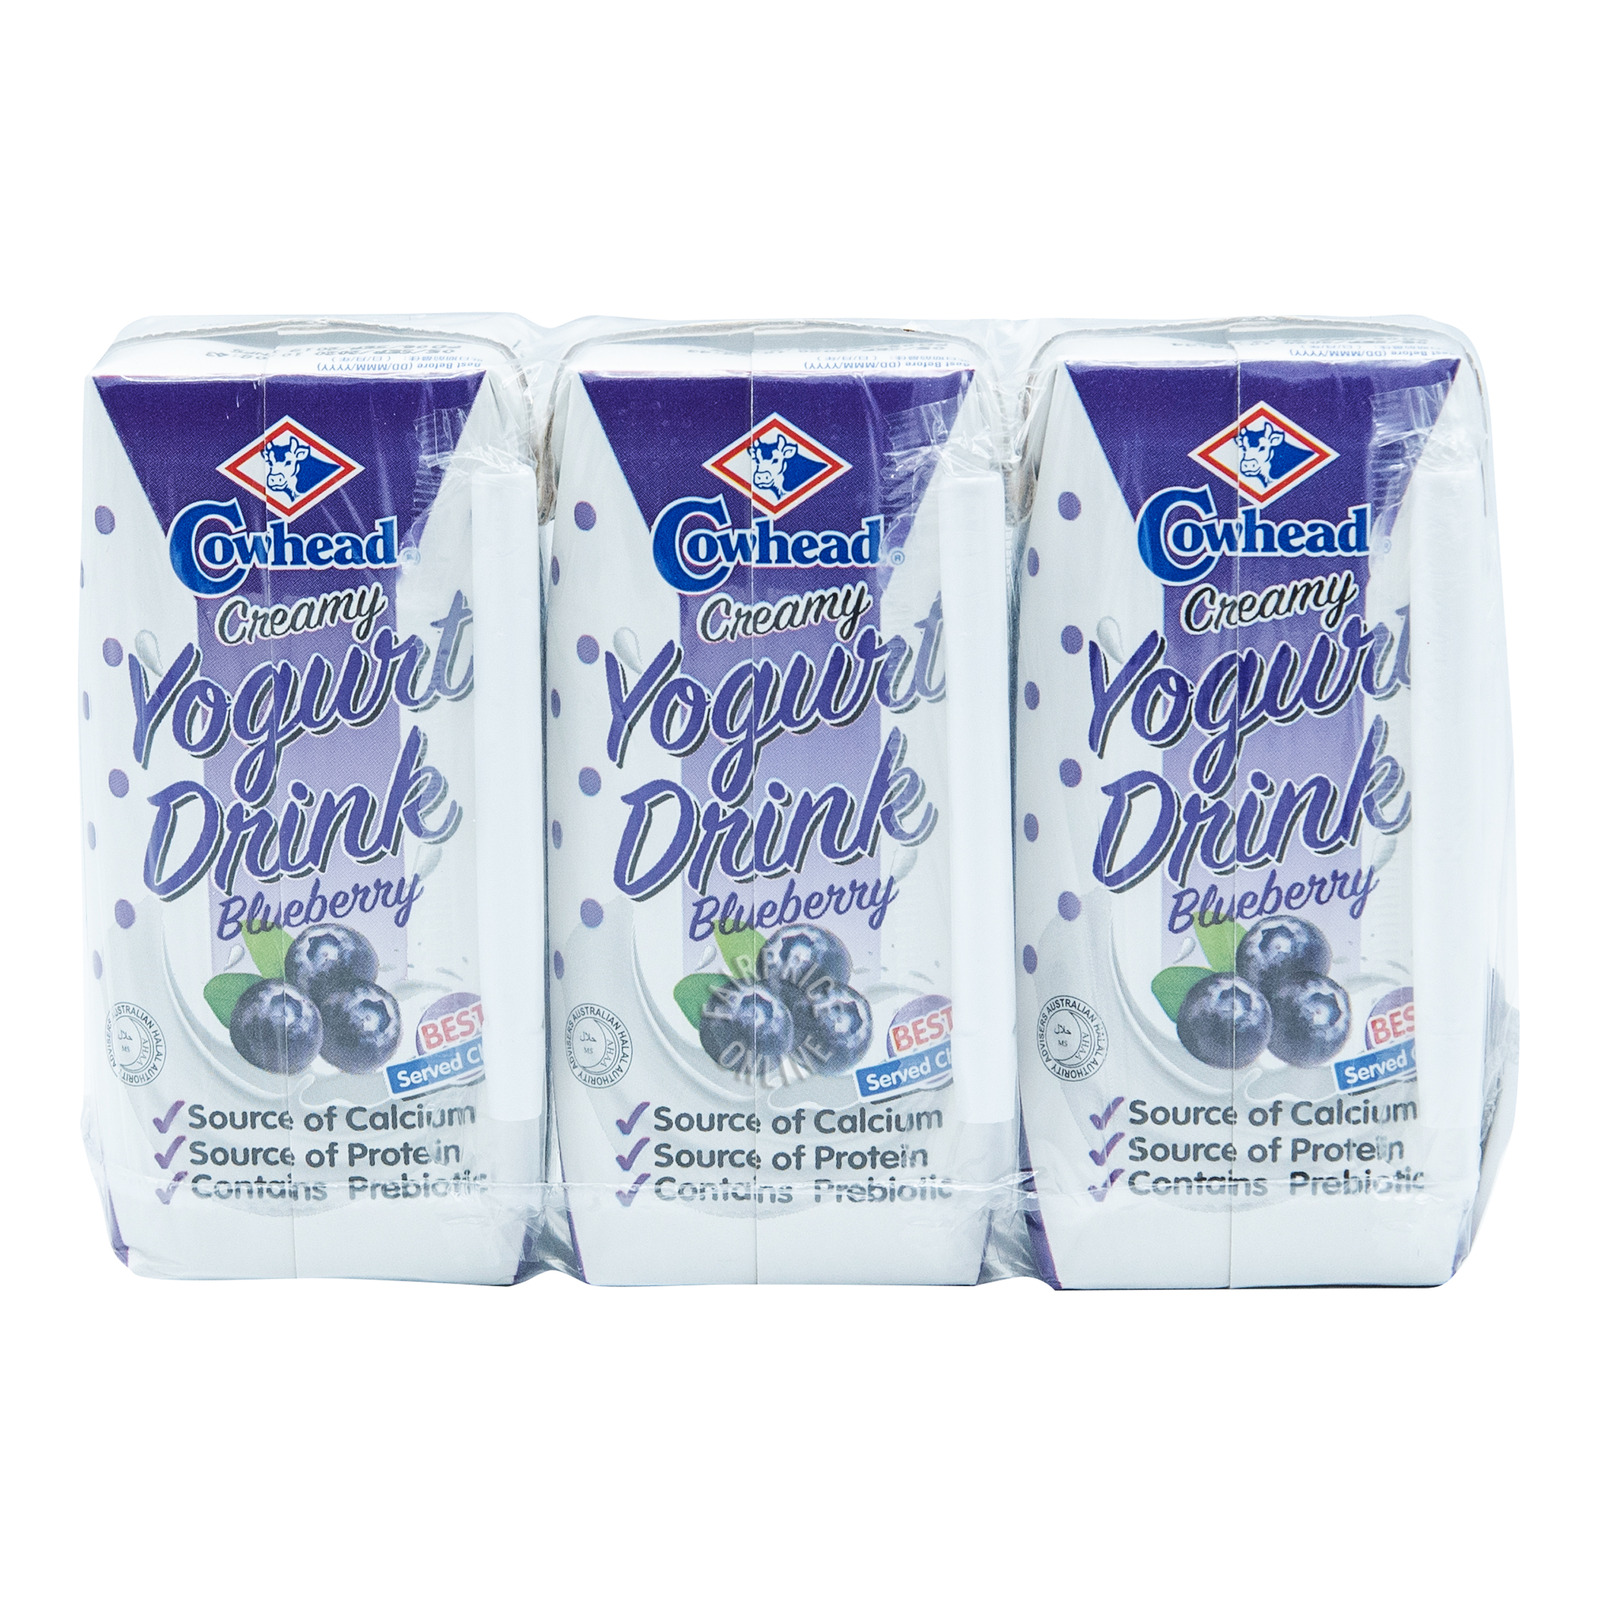 Cowhead Creamy Yoghurt Drink - Blueberry